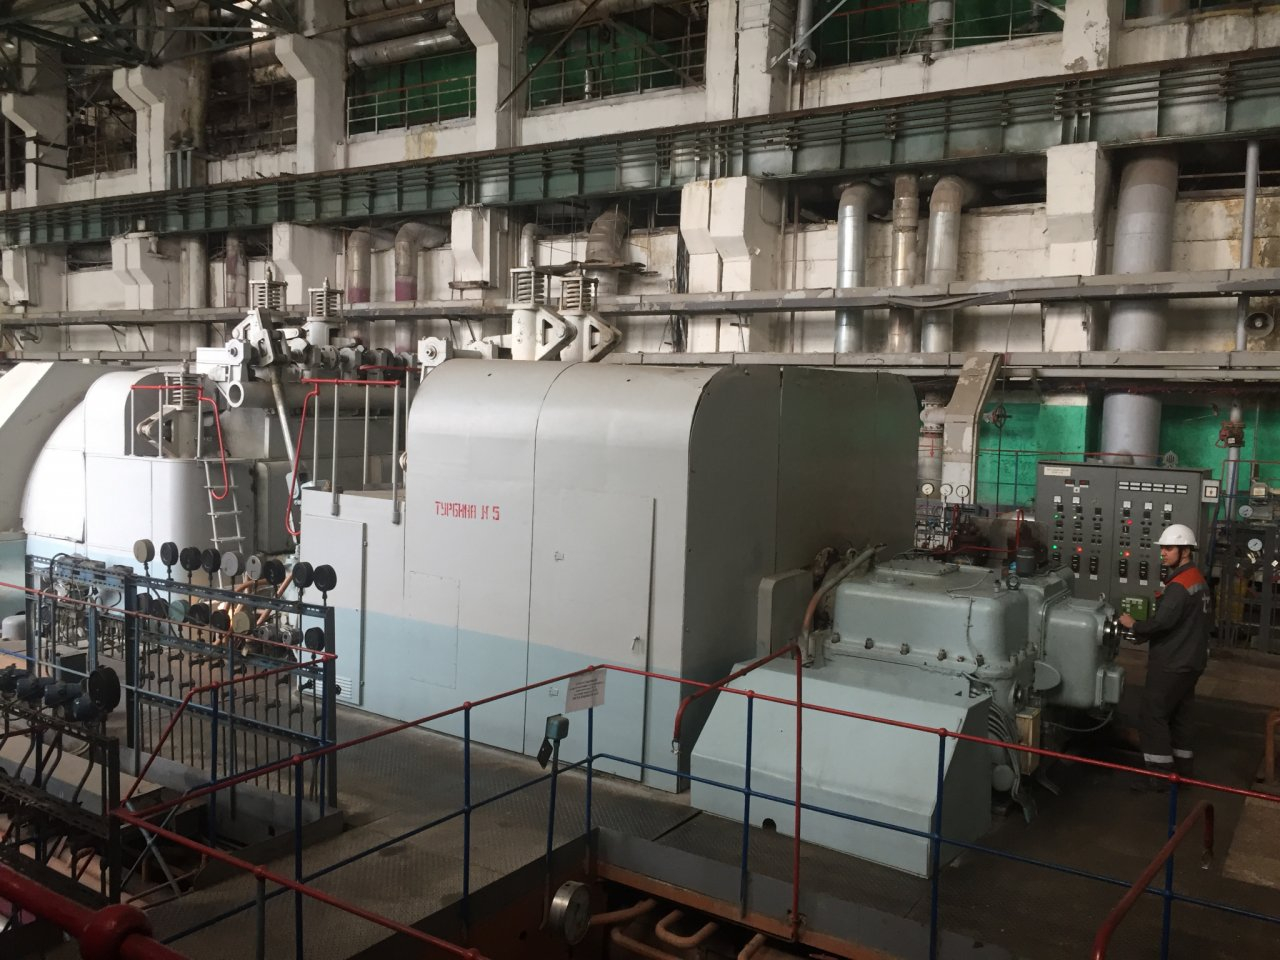 На Пензенской ТЭЦ-1 стартует ремонт турбогенератора №7